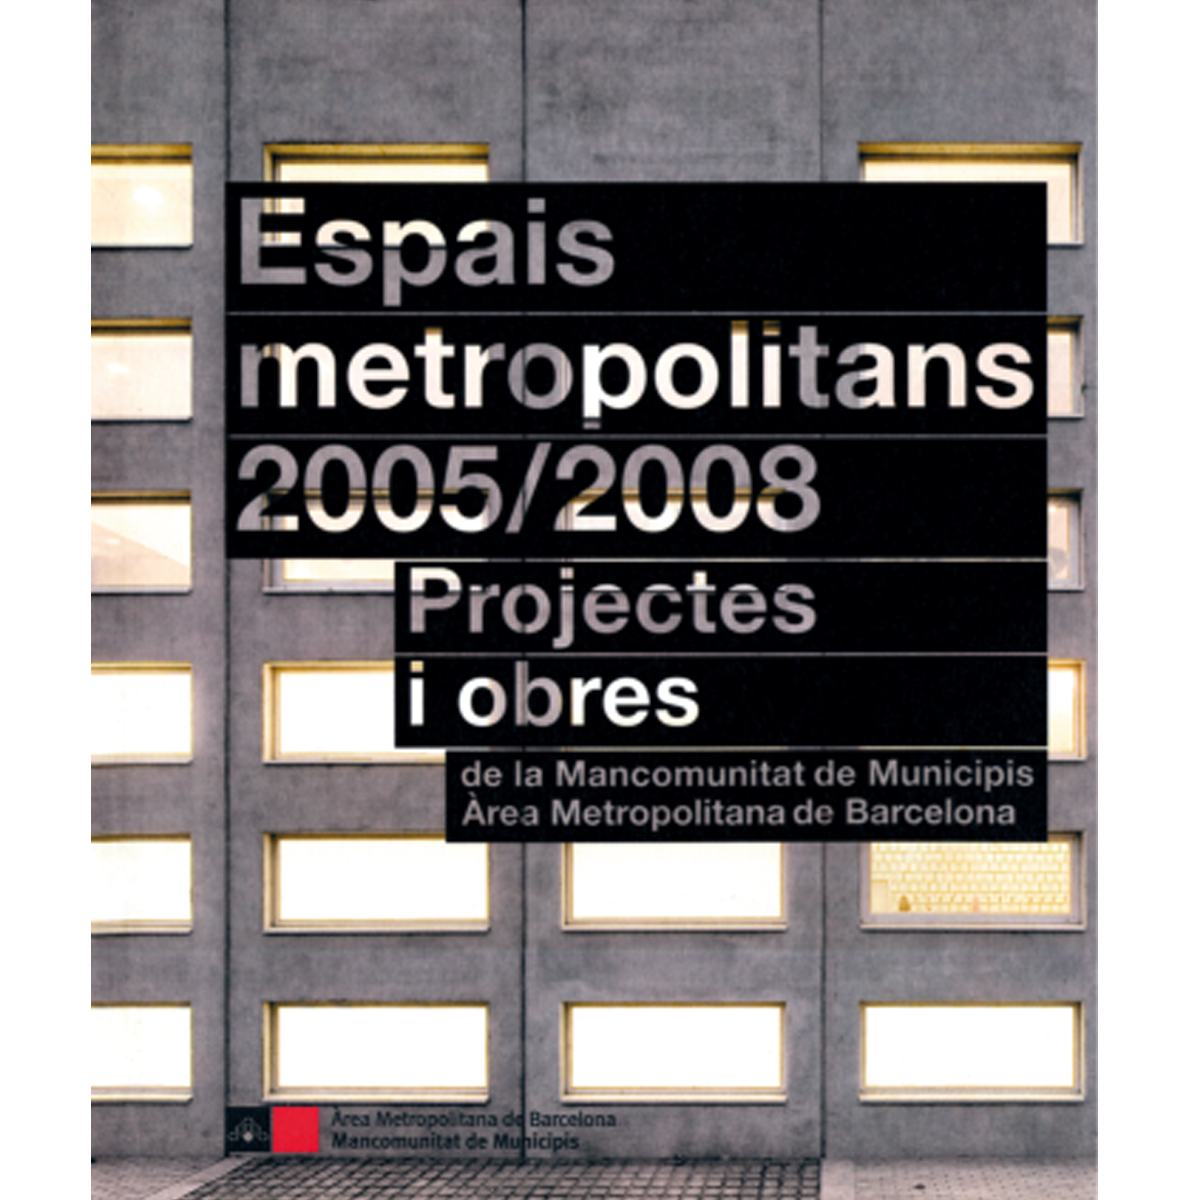 Espais metropolitans 2005/2008